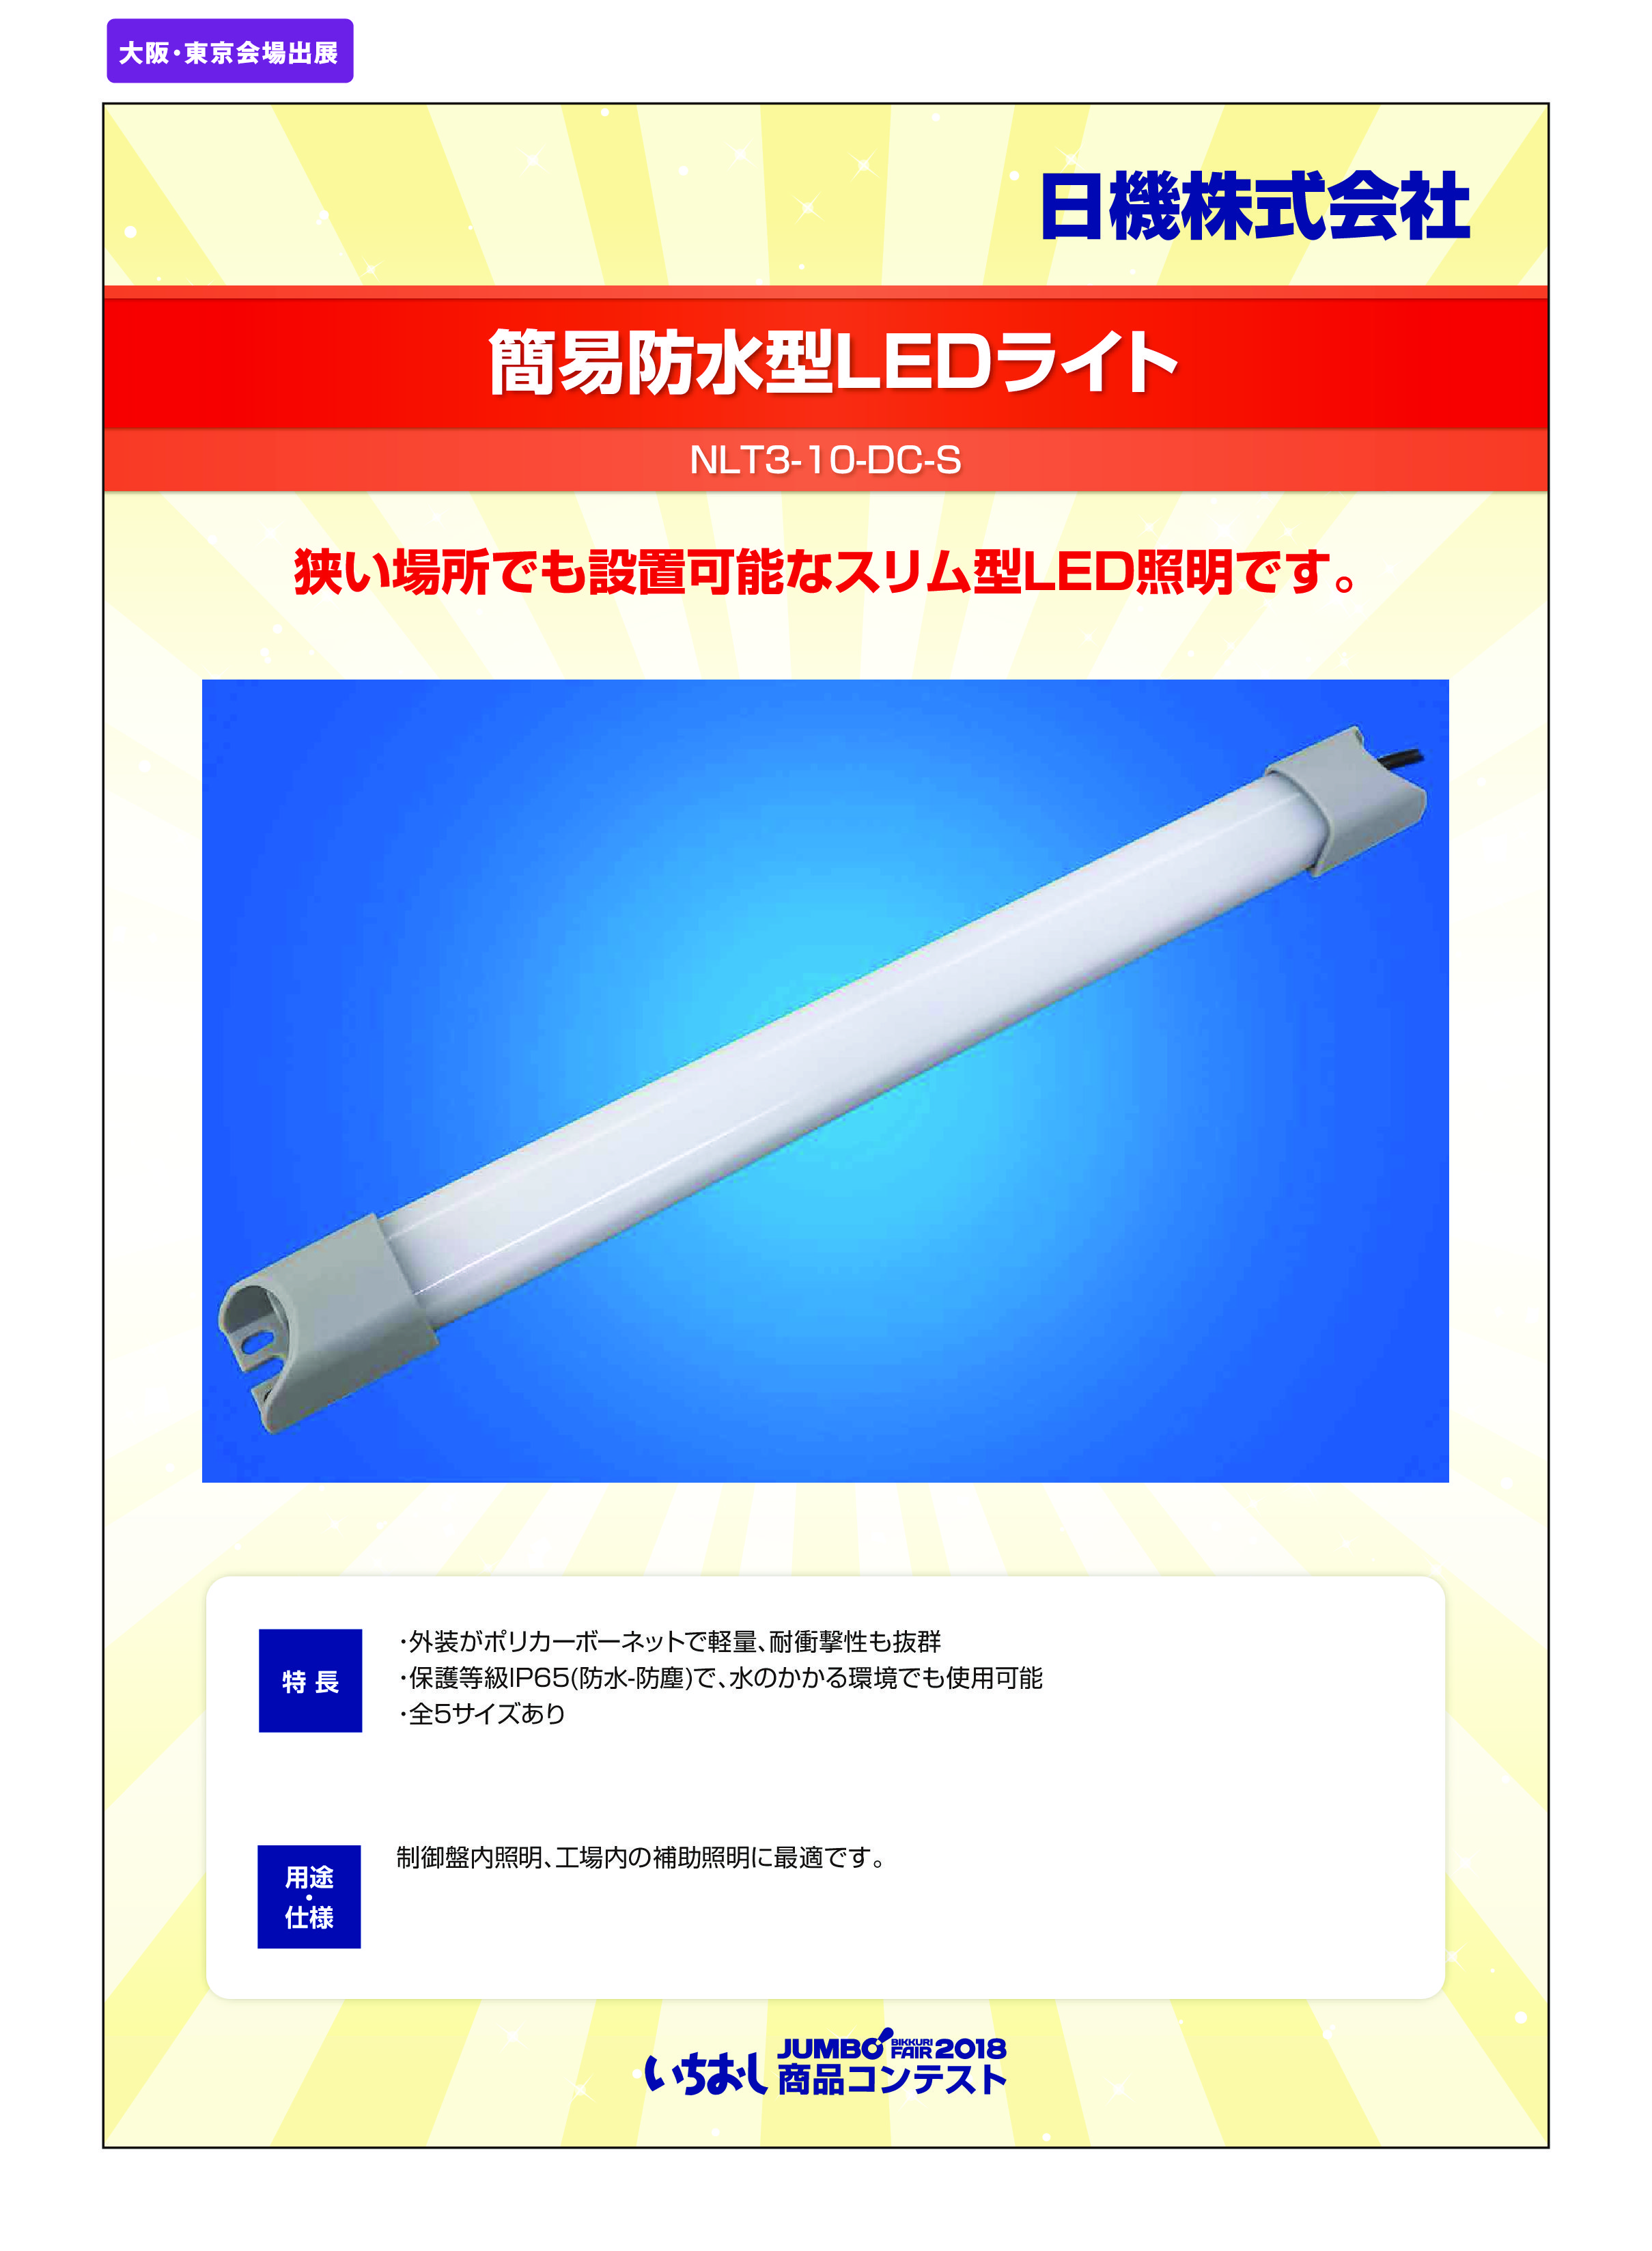 「簡易防水型LEDライト」日機株式会社